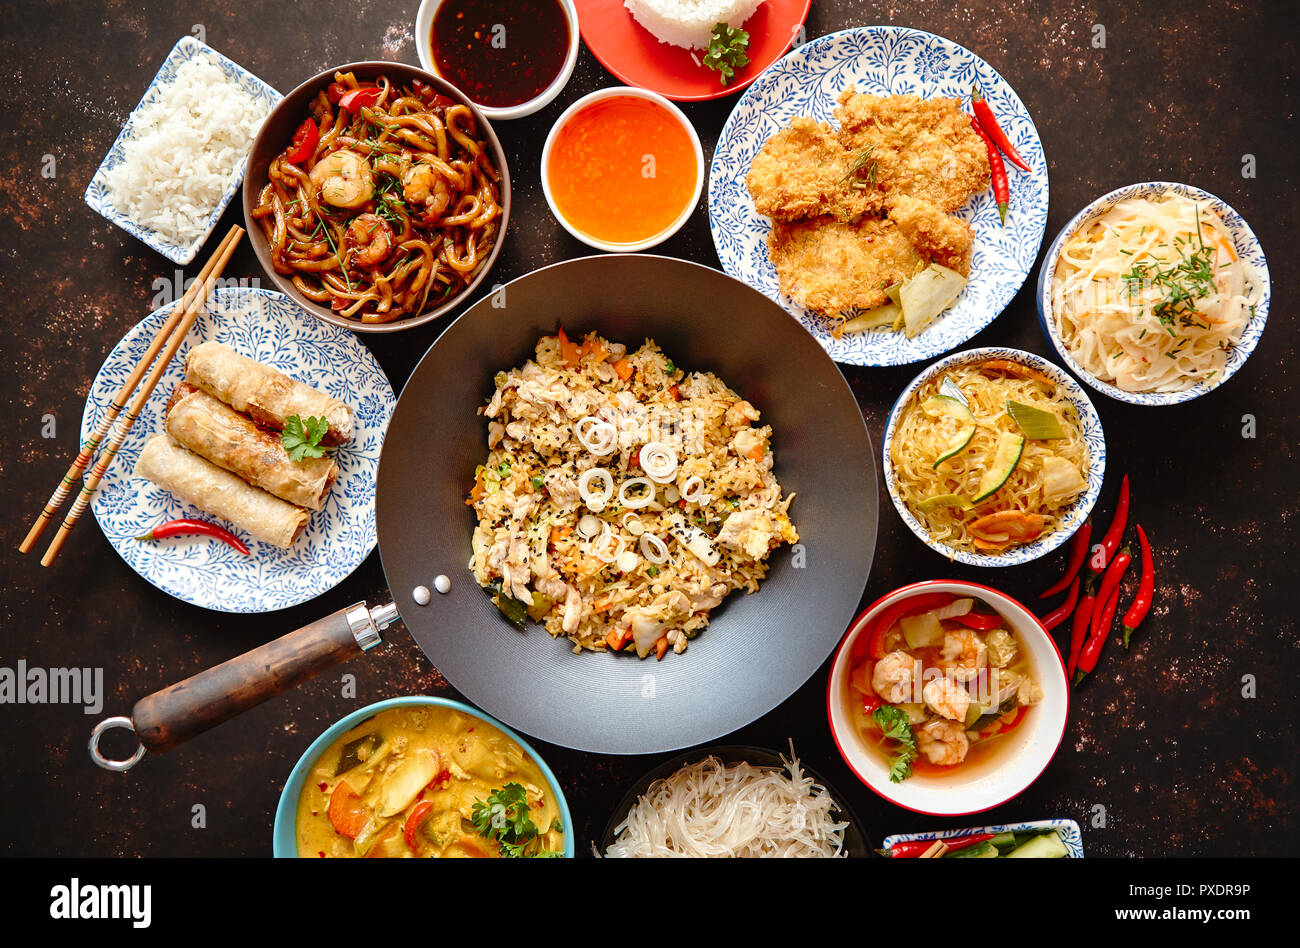 Comida china. Concepto de comida de estilo asiático composición. Foto de stock